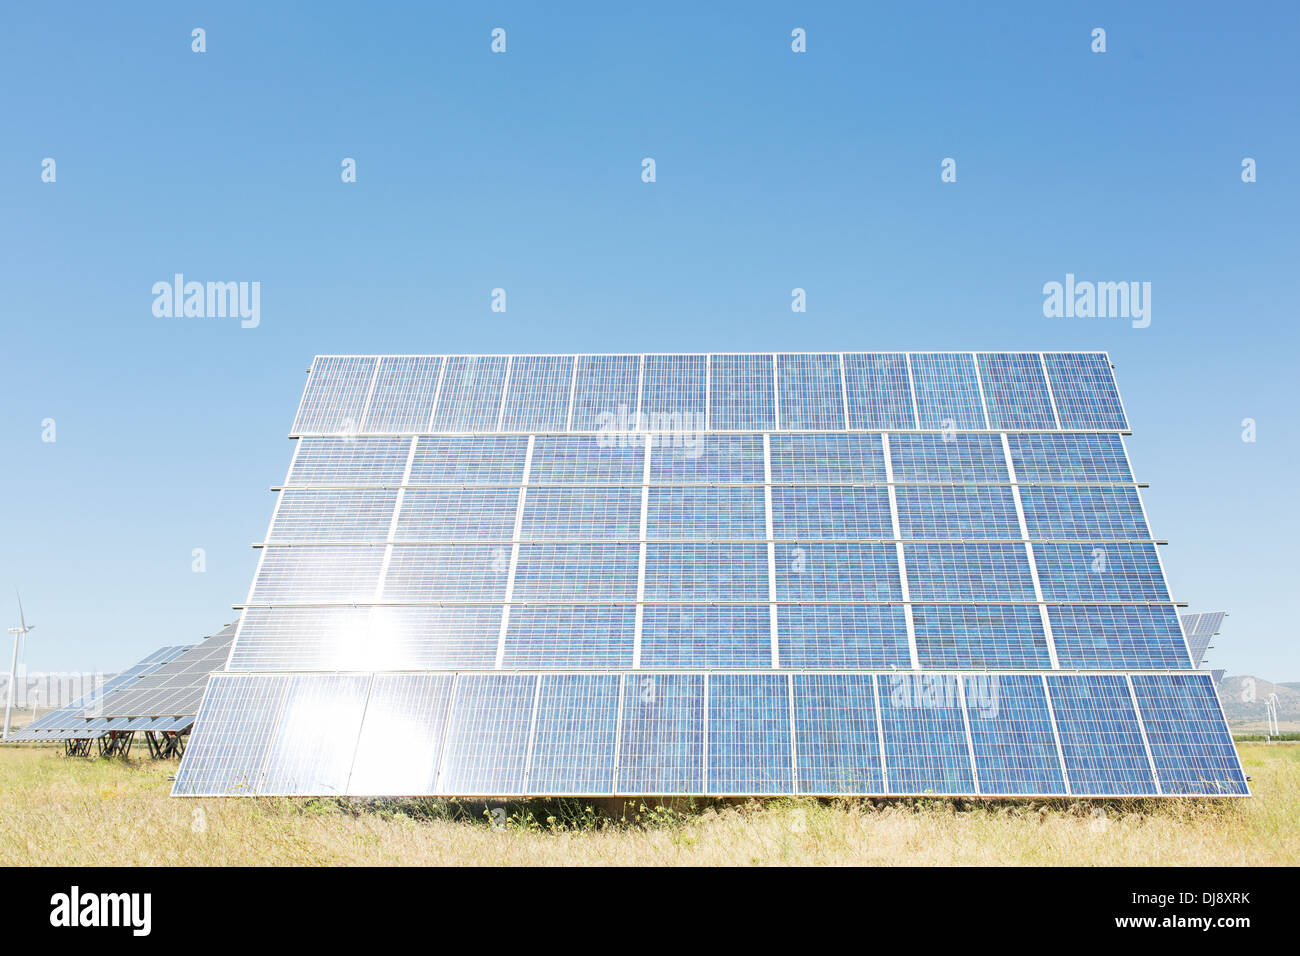 Solar panel in rural landscape Stock Photo